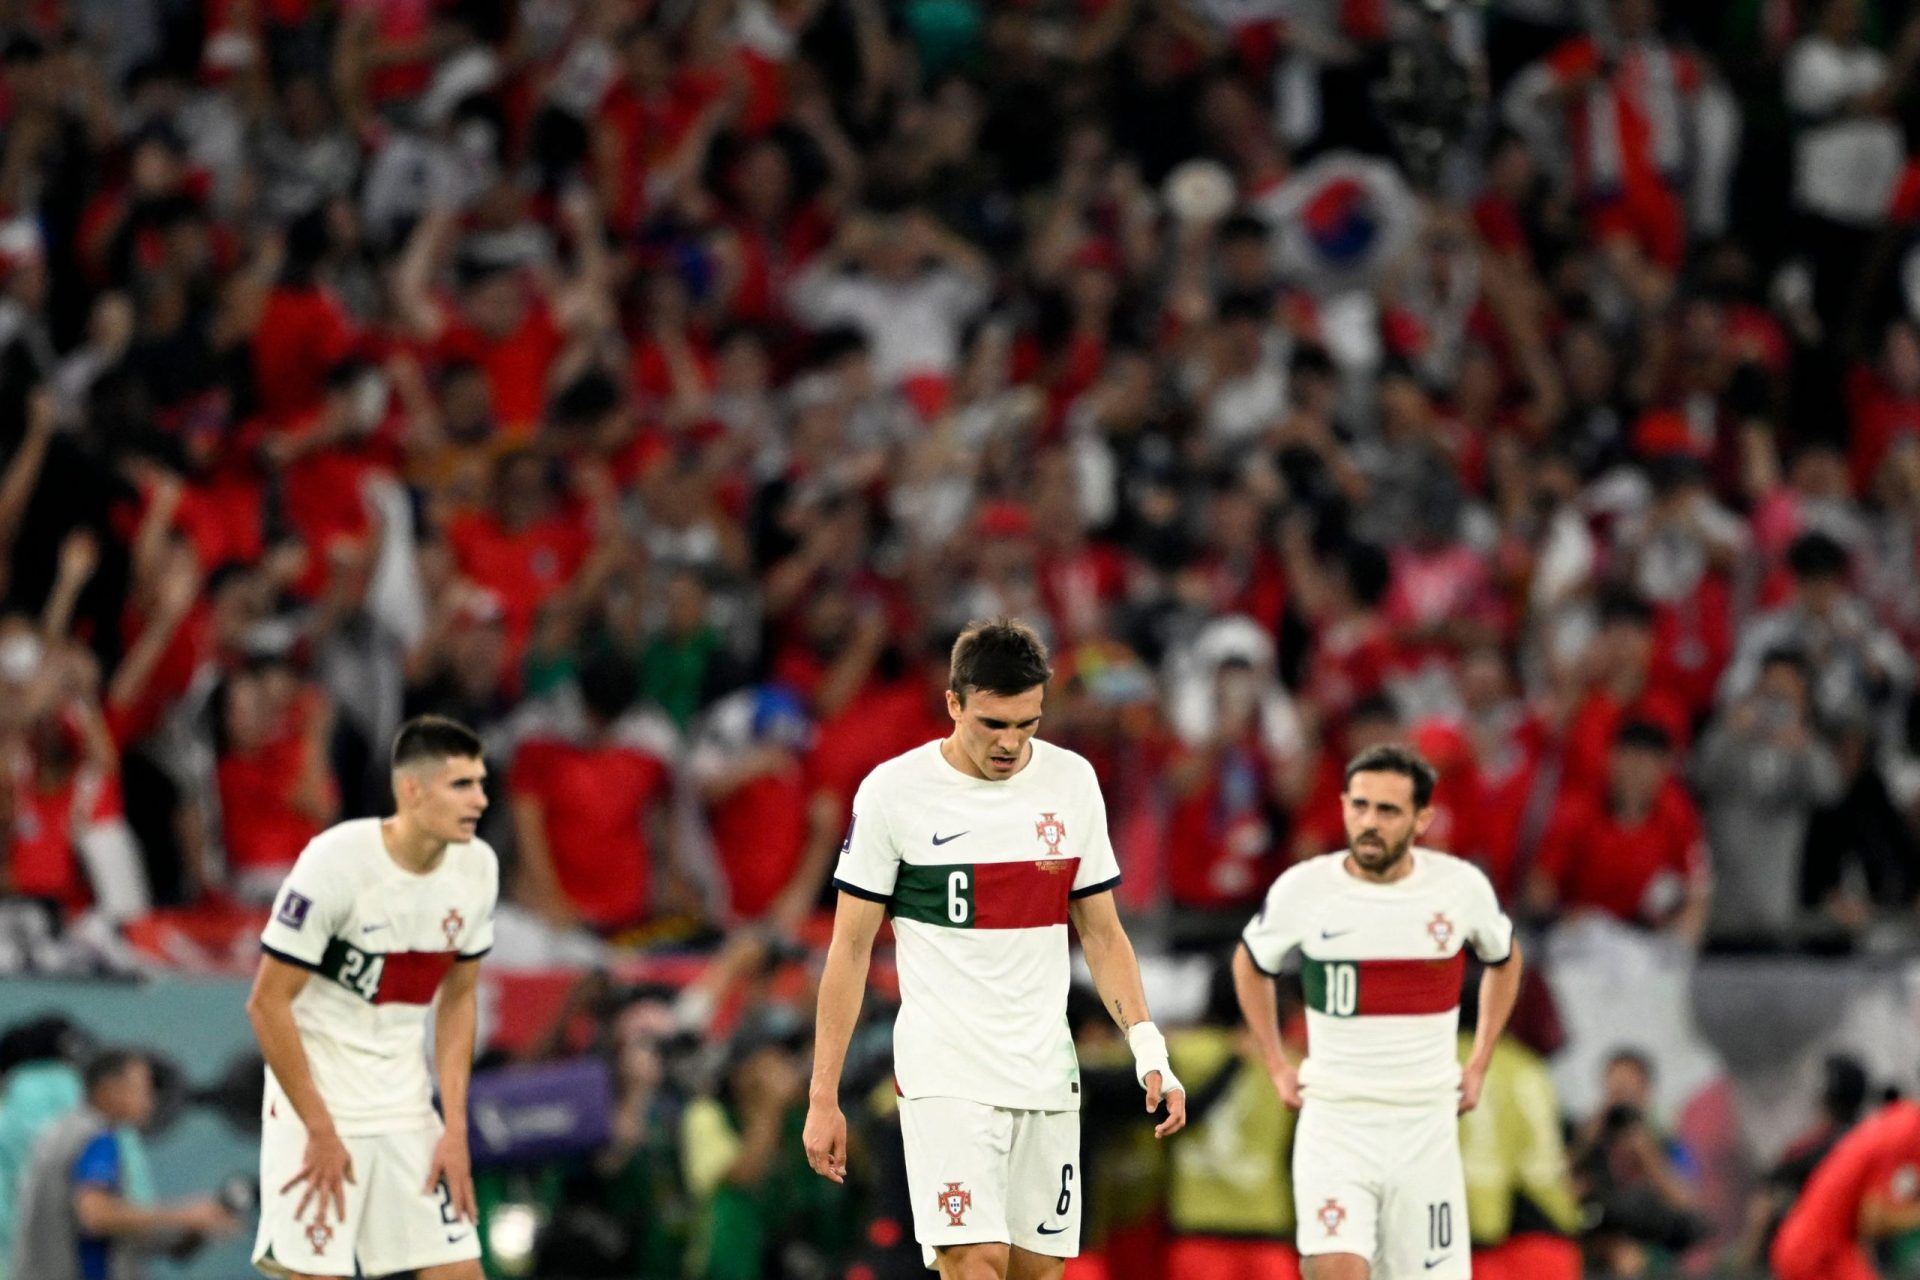 Coreia vence Portugal e passa aos oitavos em segundo do grupo